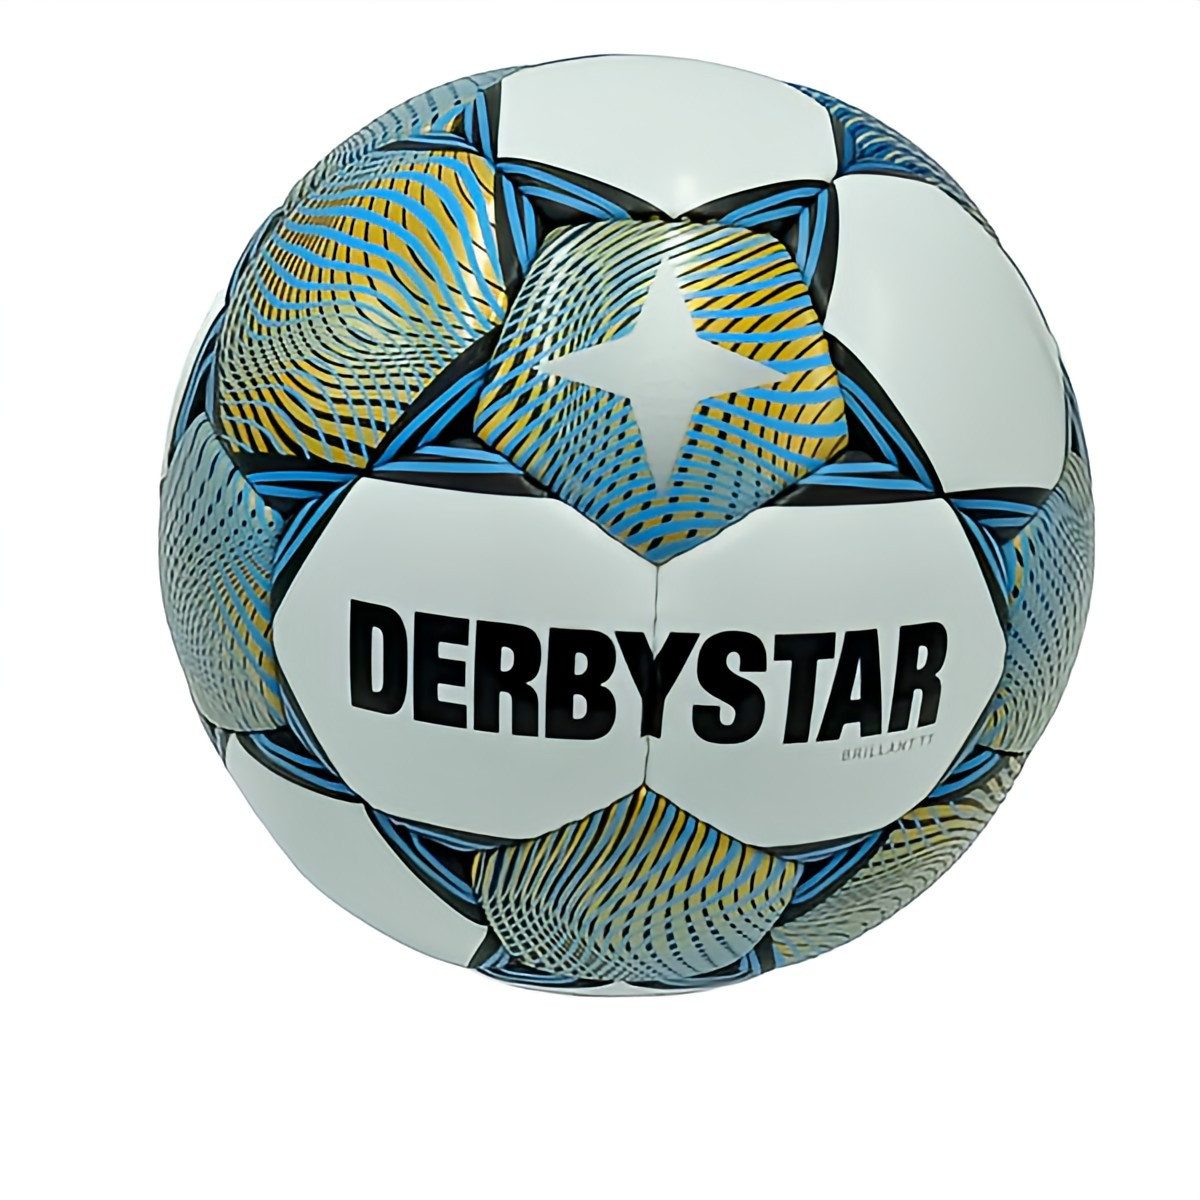 Derbystar Fußball Brillant TT v23 Trainingsball - Grösse 5